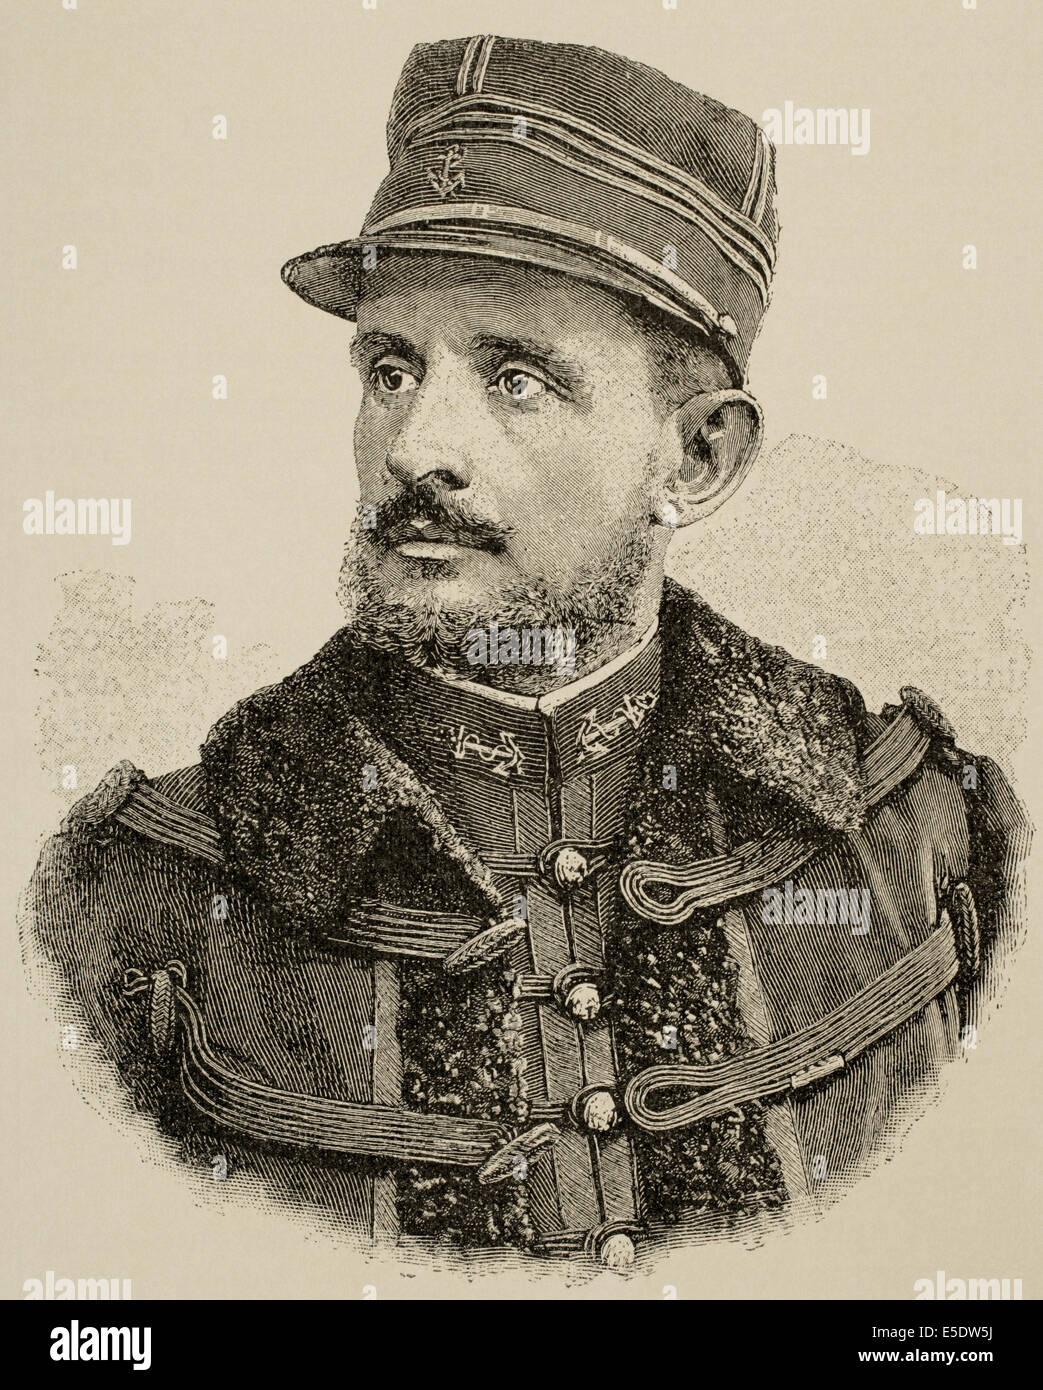 General Jean-Baptiste Marchand (1863 – 1934). Französischer Offizier und Entdecker in Afrika. Gravur. Stockfoto